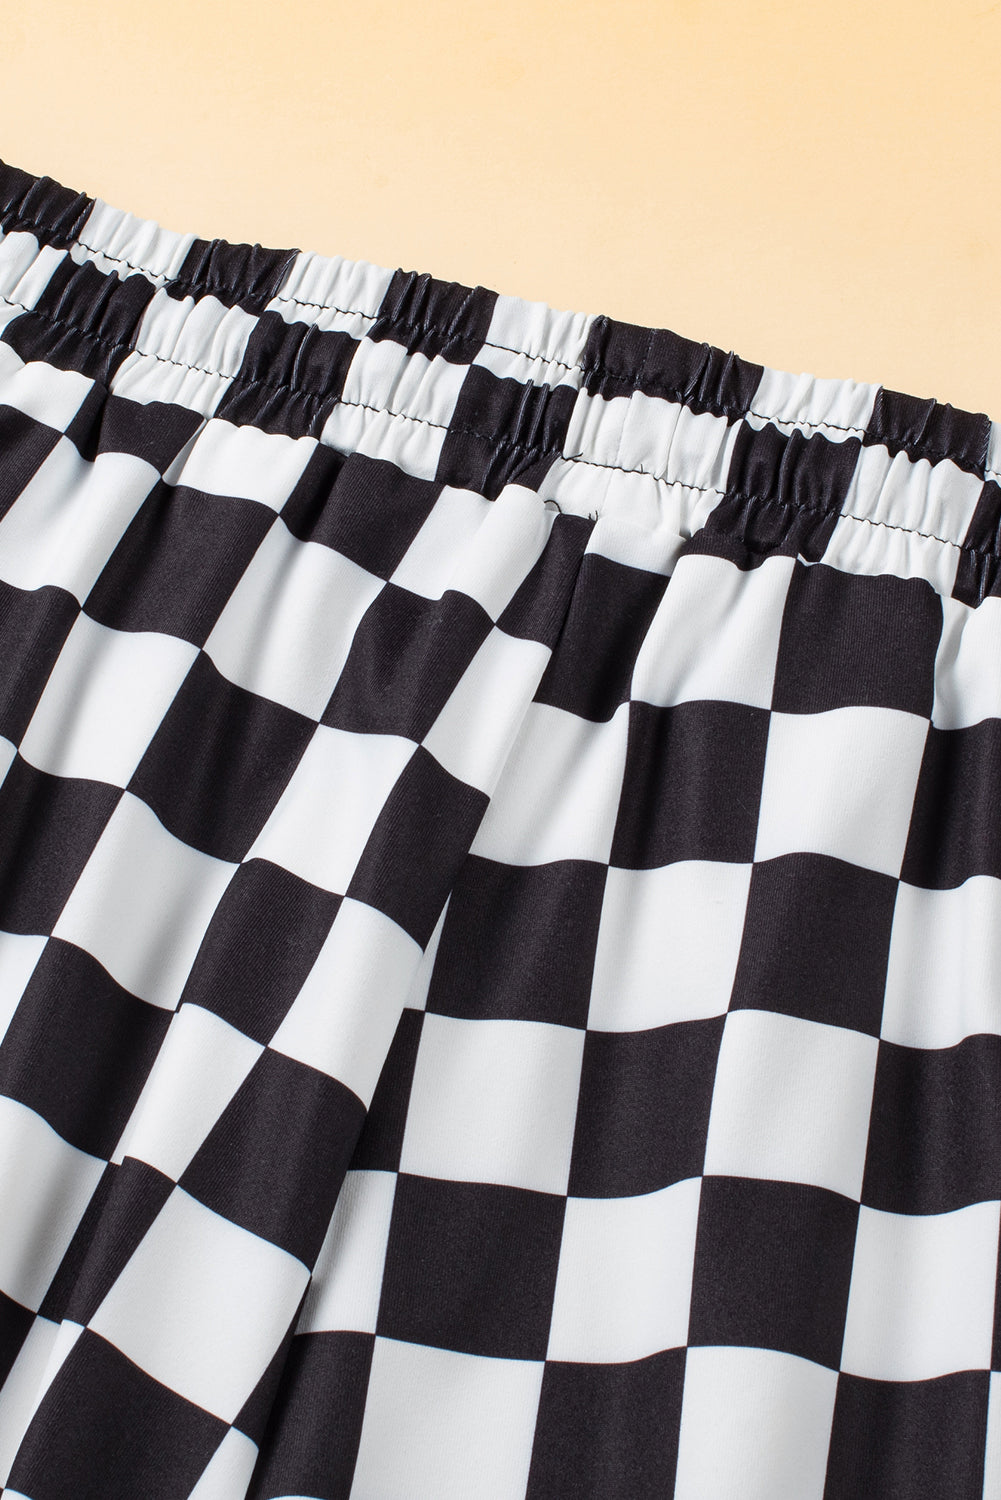 Drawstring Checkered Shorts with Pockets